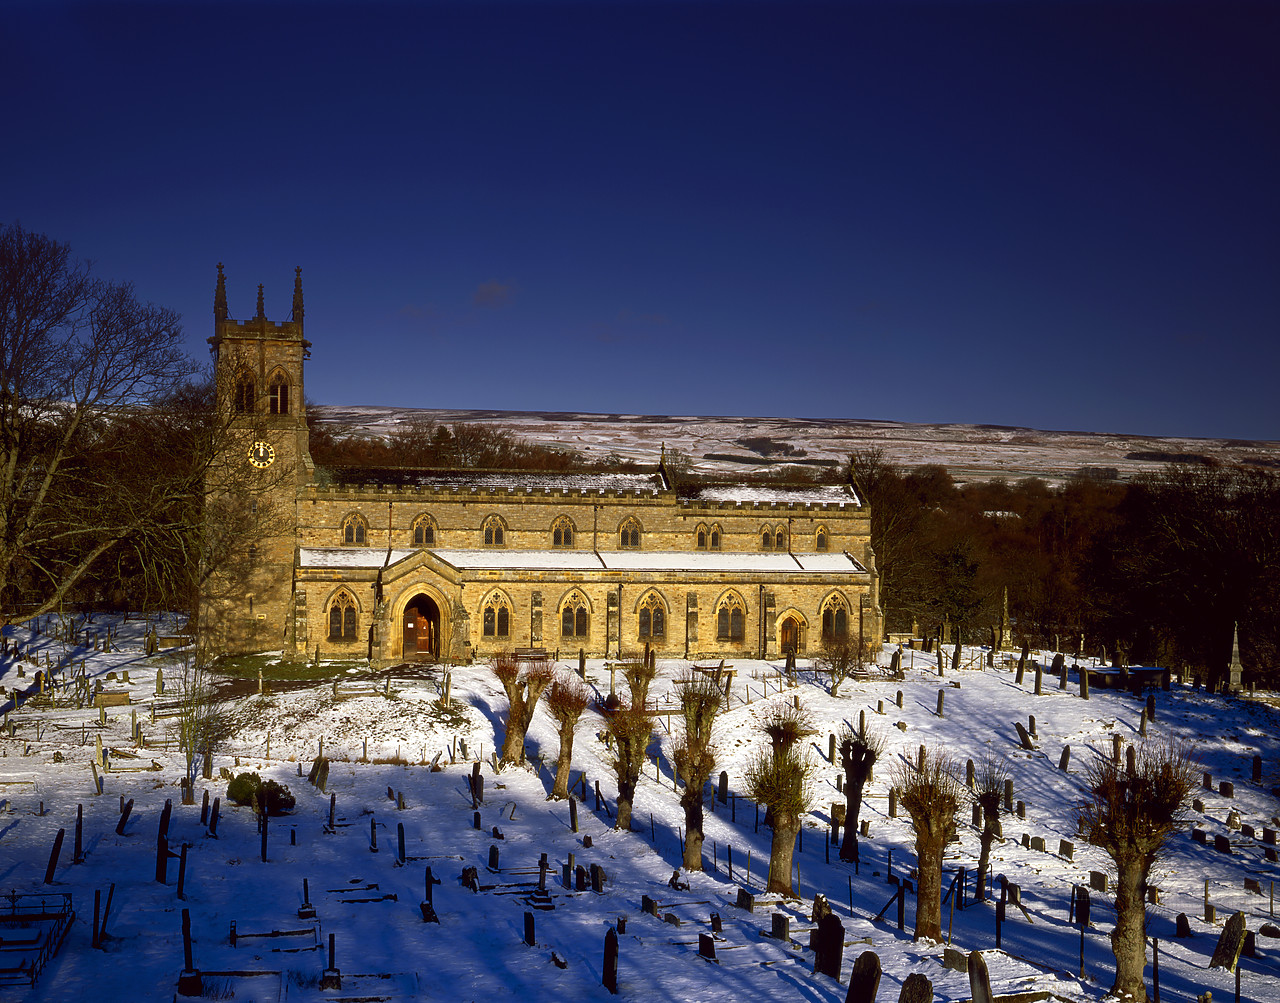 #040001-1 - Church in Winter, Aysgarth, North Yorkshire, England